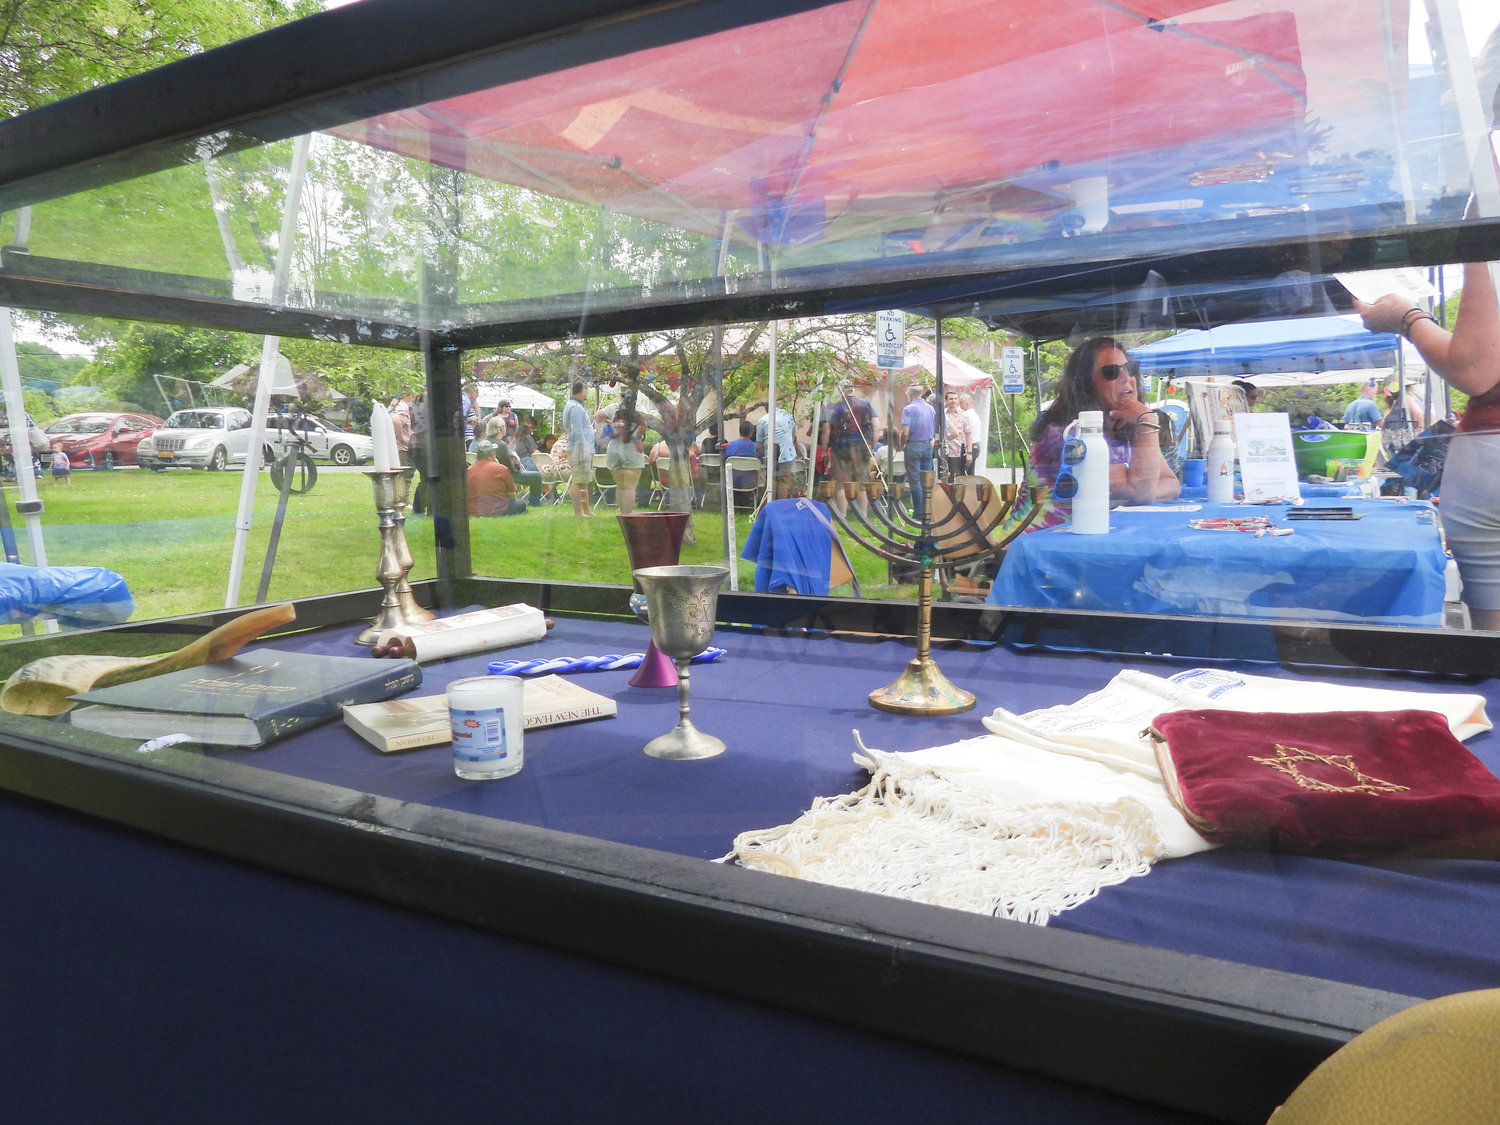 Inauguracyjny festiwal kultury żydowskiej "Jewtica" rozpoczął się w niedzielę 12 czerwca setkami osób w Centrum Społeczności Żydowskiej w Utica.  Ludzie zjeżdżali się z całego świata, aby dzielić się kulturą, skosztować pysznych potraw i nauczyć się czegoś nowego.